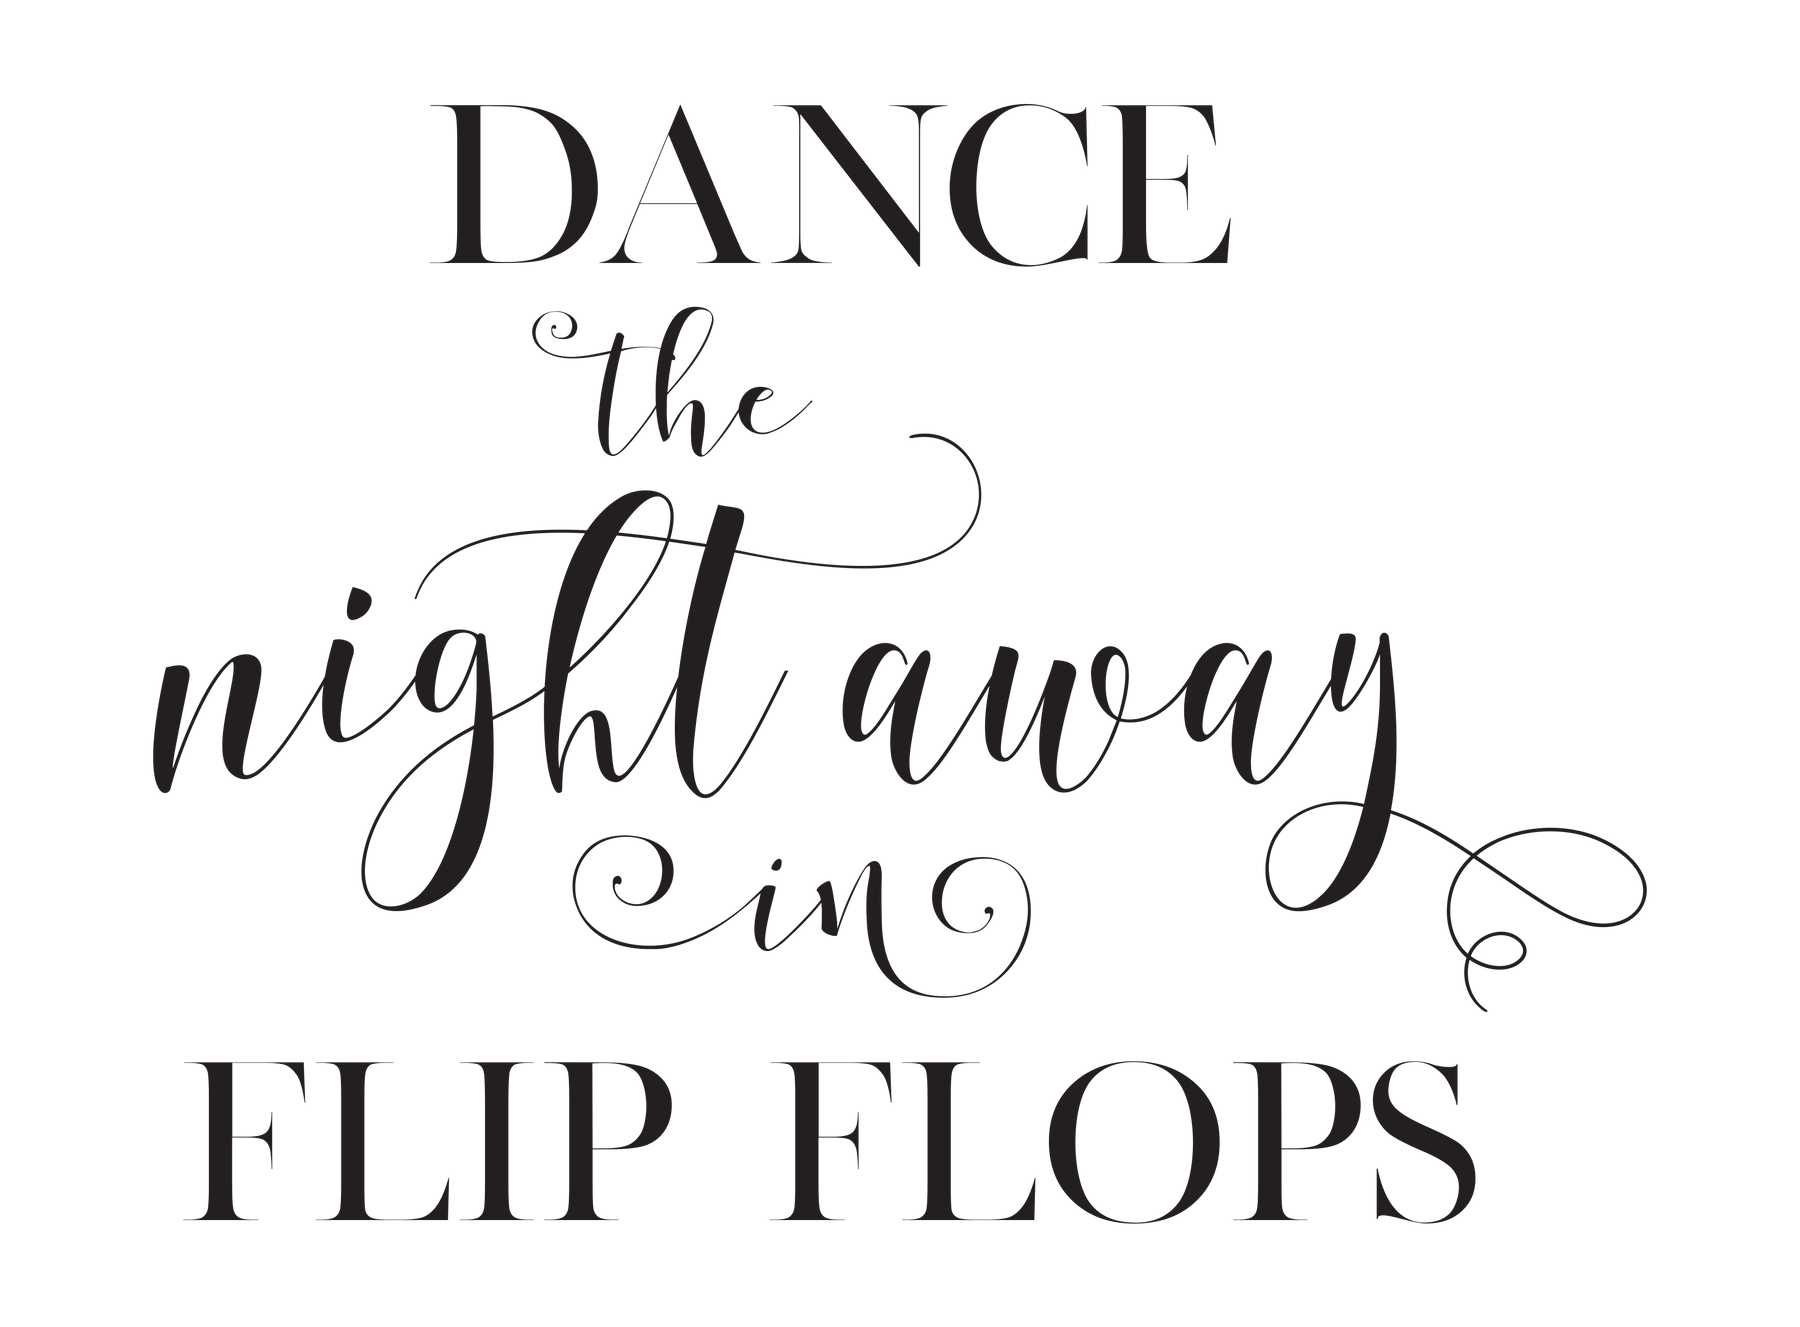 Sign 7 - Reception Flip Flops